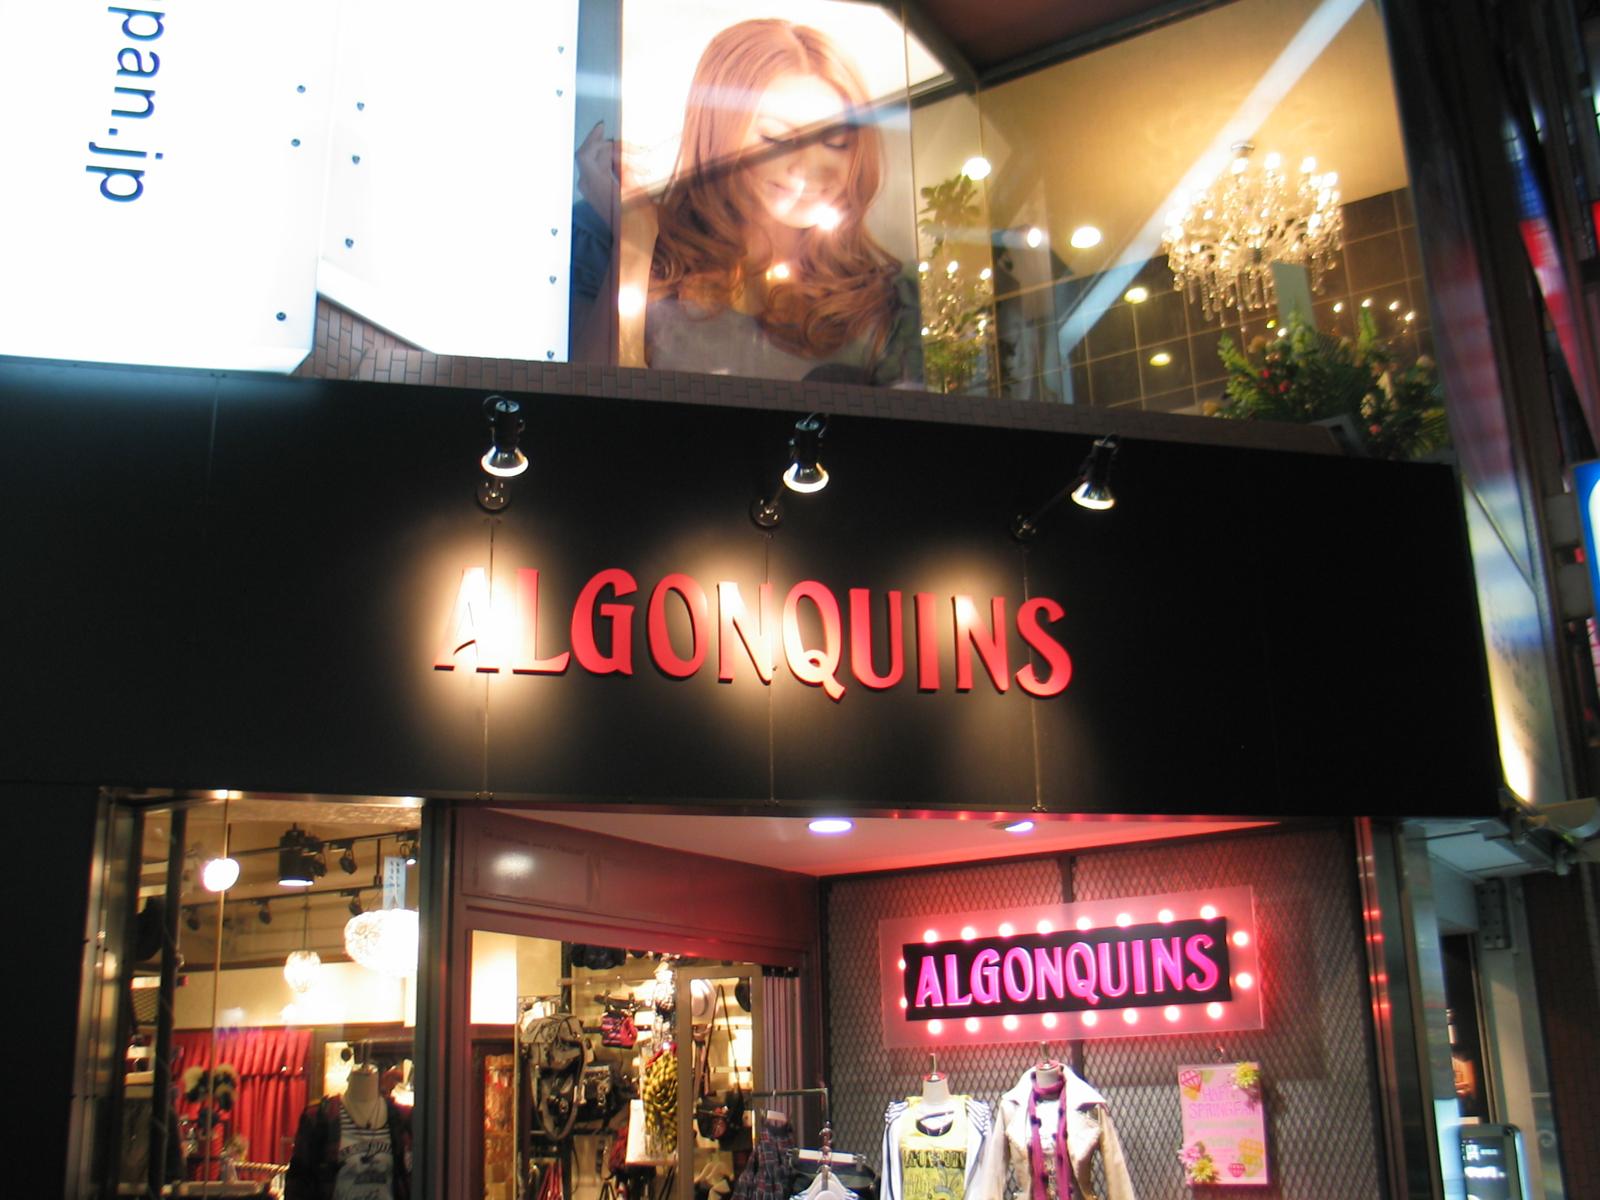 Algonquins